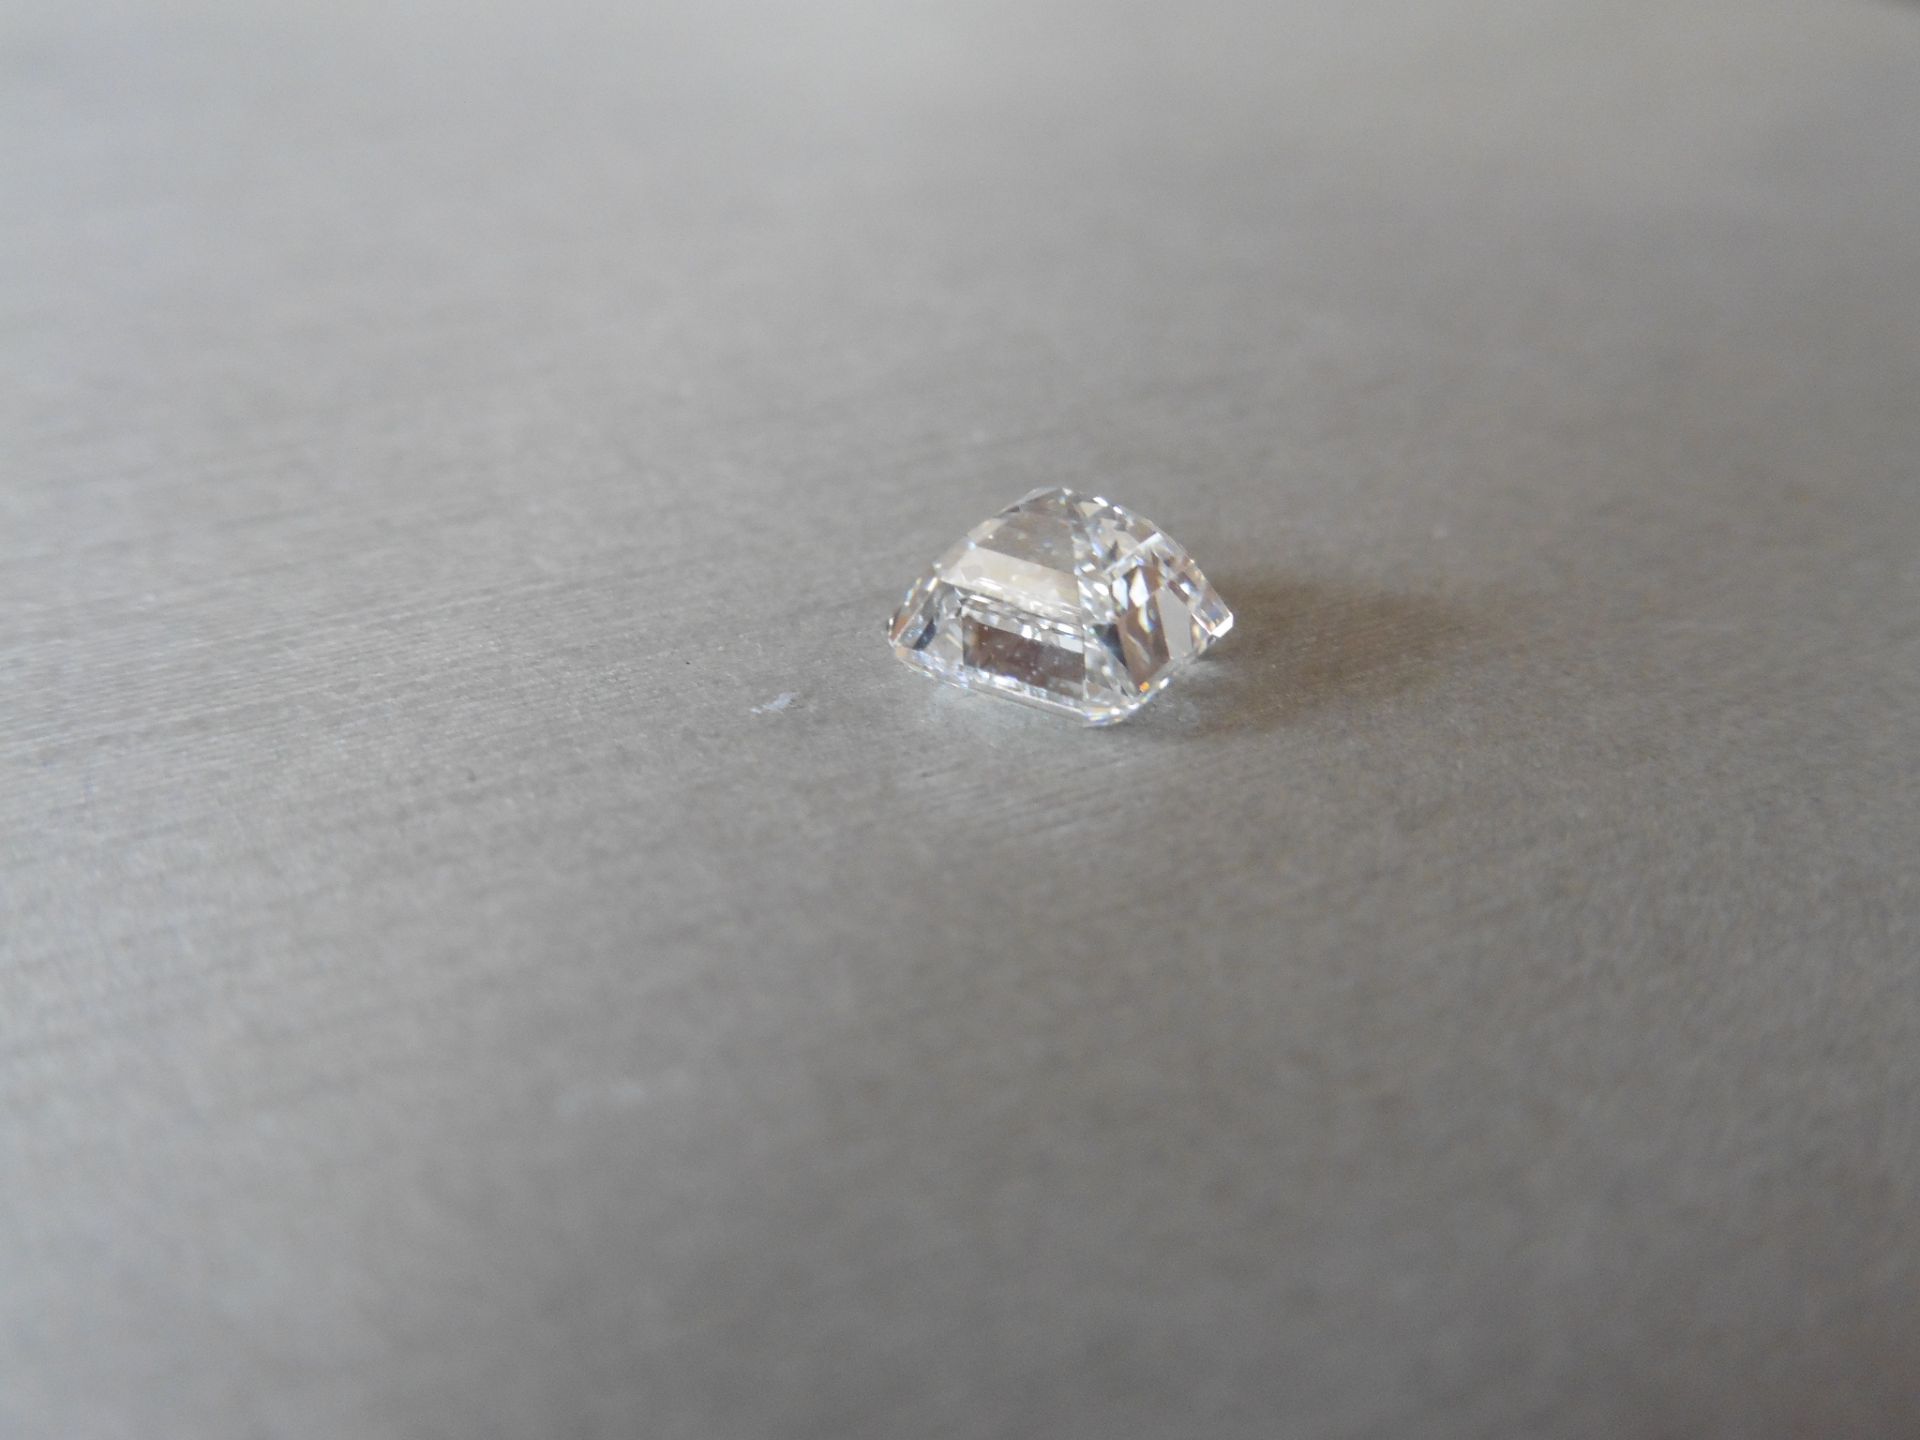 2.00ct single asscher cut diamond. Measurements 6.78 x 6.62 x 4.77mm. E colour and VS1 clarity.